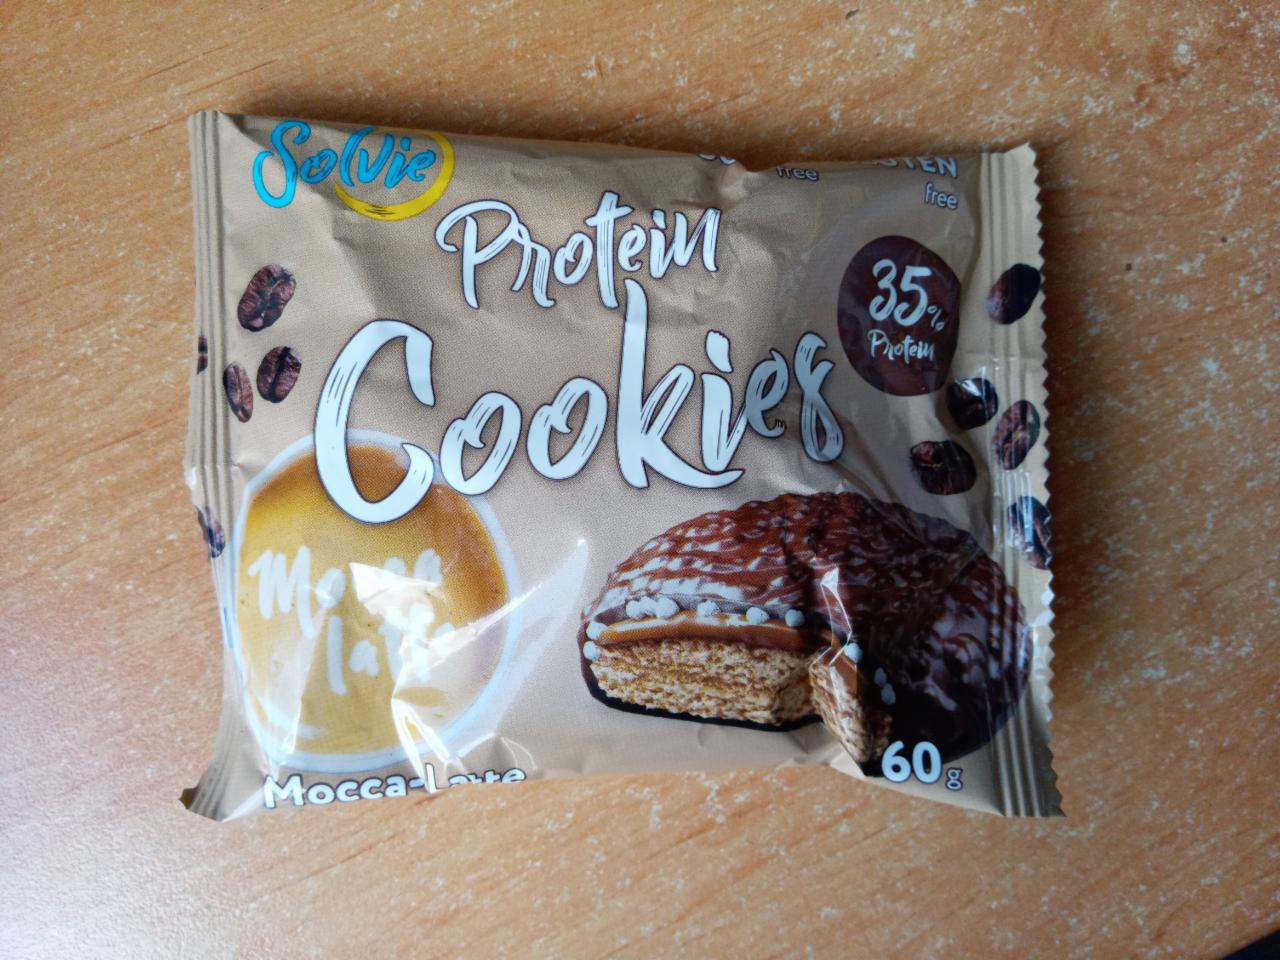 Фото - Печенье Protein cookies протеиновое Мокко-Латте глазированное молочным шоколадом без сахара Solvie